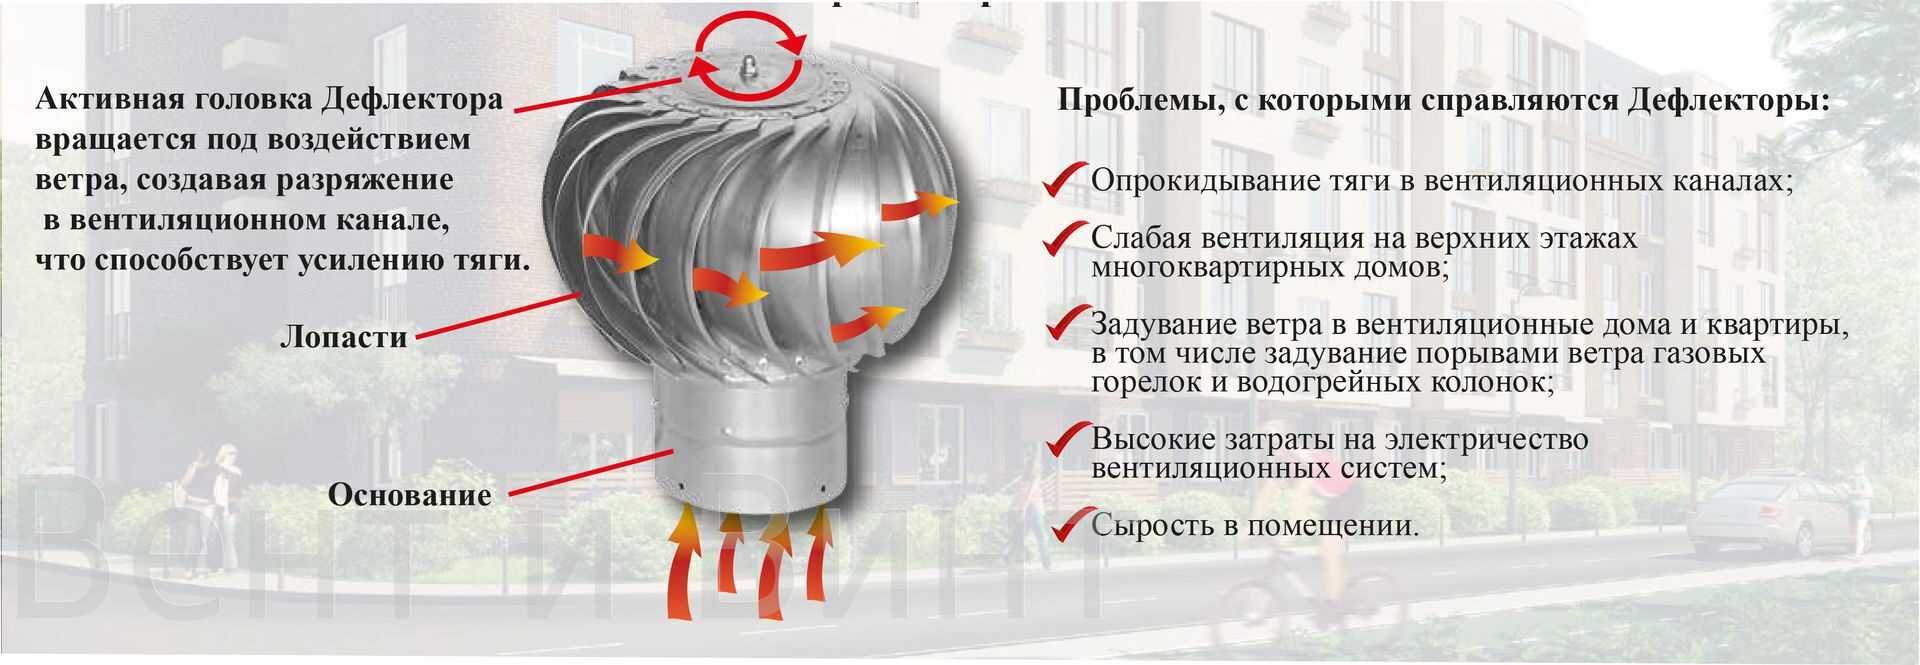 Делаем дефлектор на дымоход — увеличиваем тягу, спасаемся от ветра